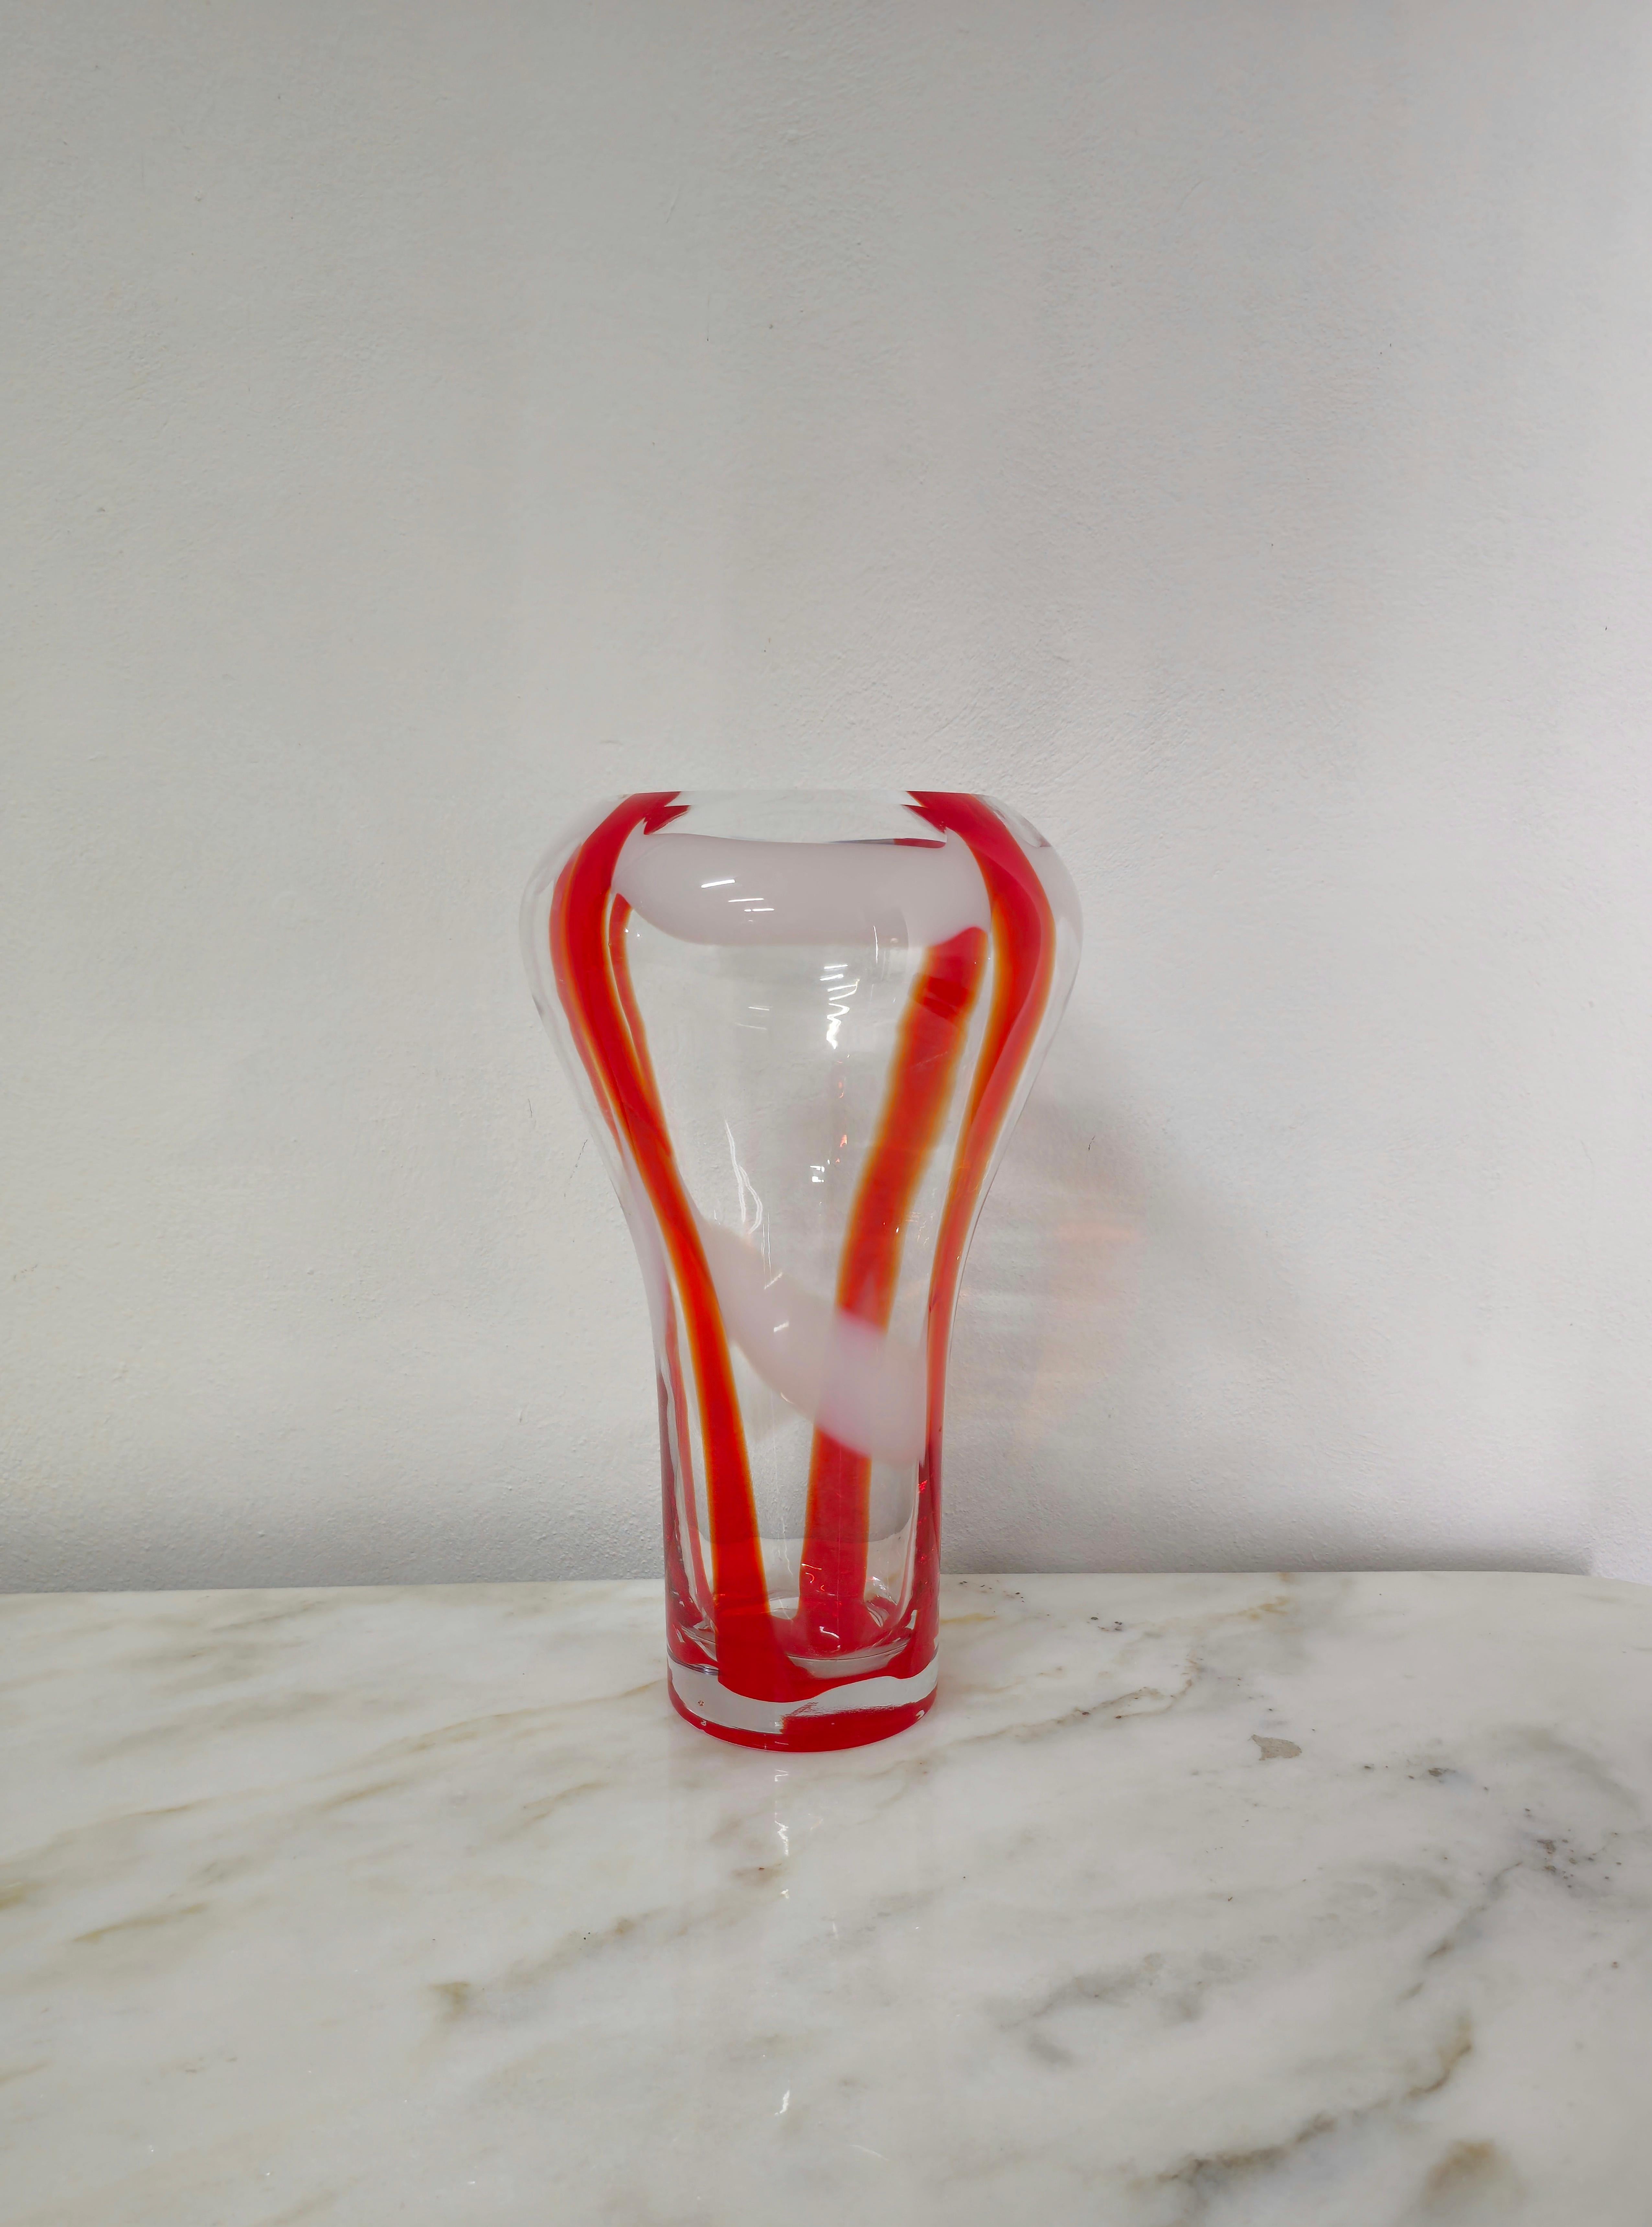 20th Century Decorative Object Vase Guzzini Murano Glass Midcentury Italian Design 1970s For Sale